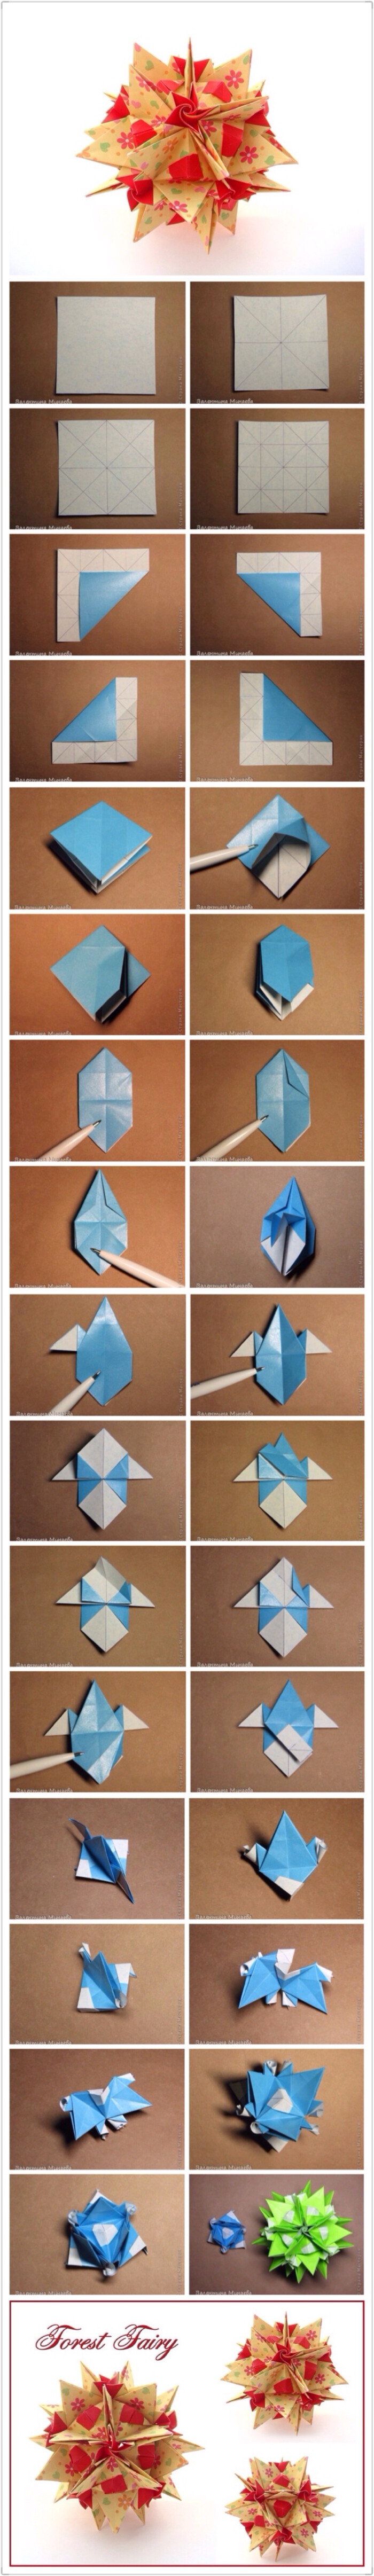 手工达人的折纸花球教程,用纸:30张,尺寸:10*10cm